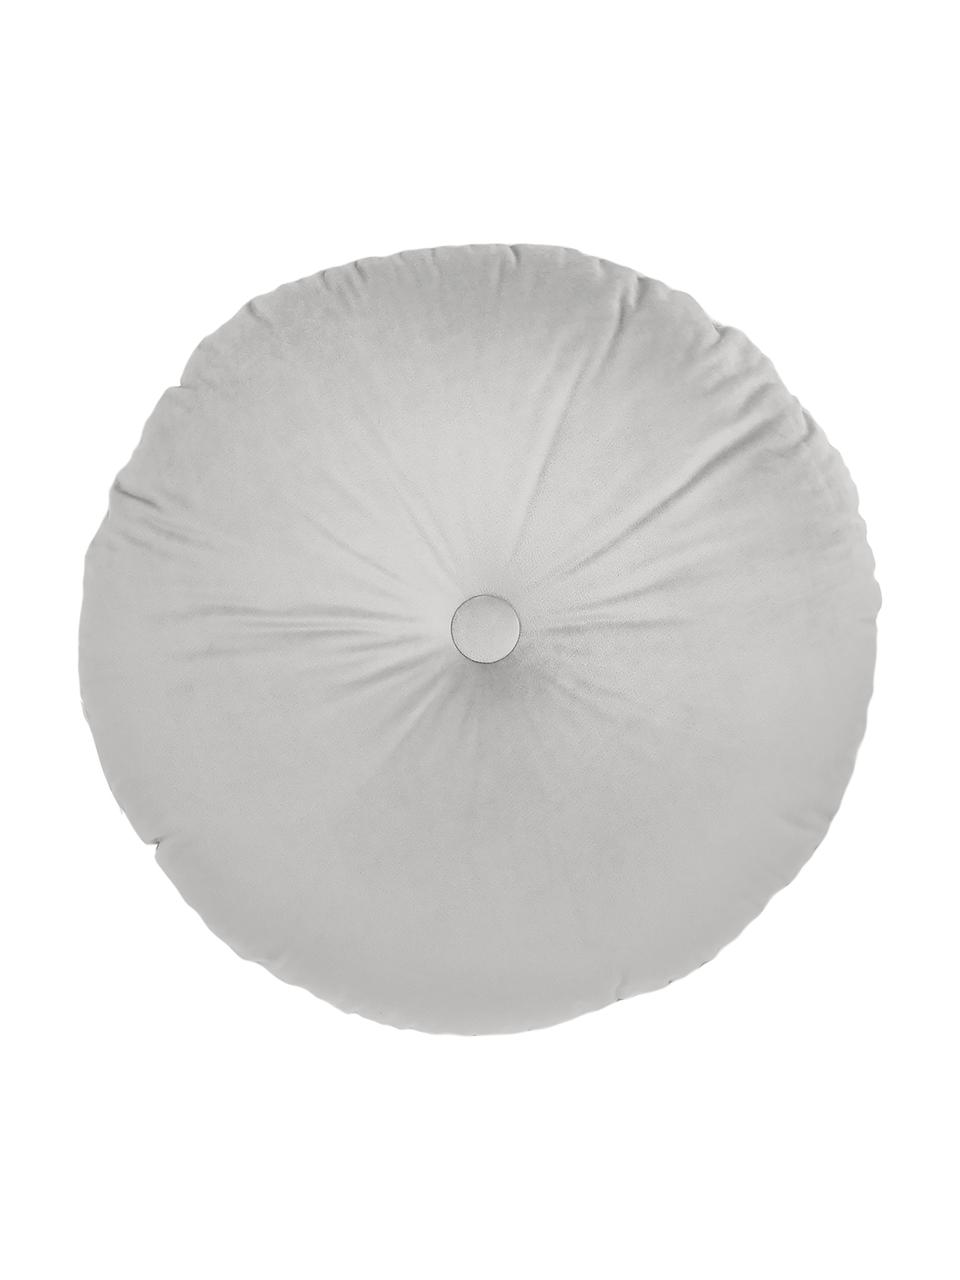 Okrągła poduszka z aksamitu Monet, Tapicerka: 100% aksamit poliestrowy, Srebrnoszary, Ø 40 cm